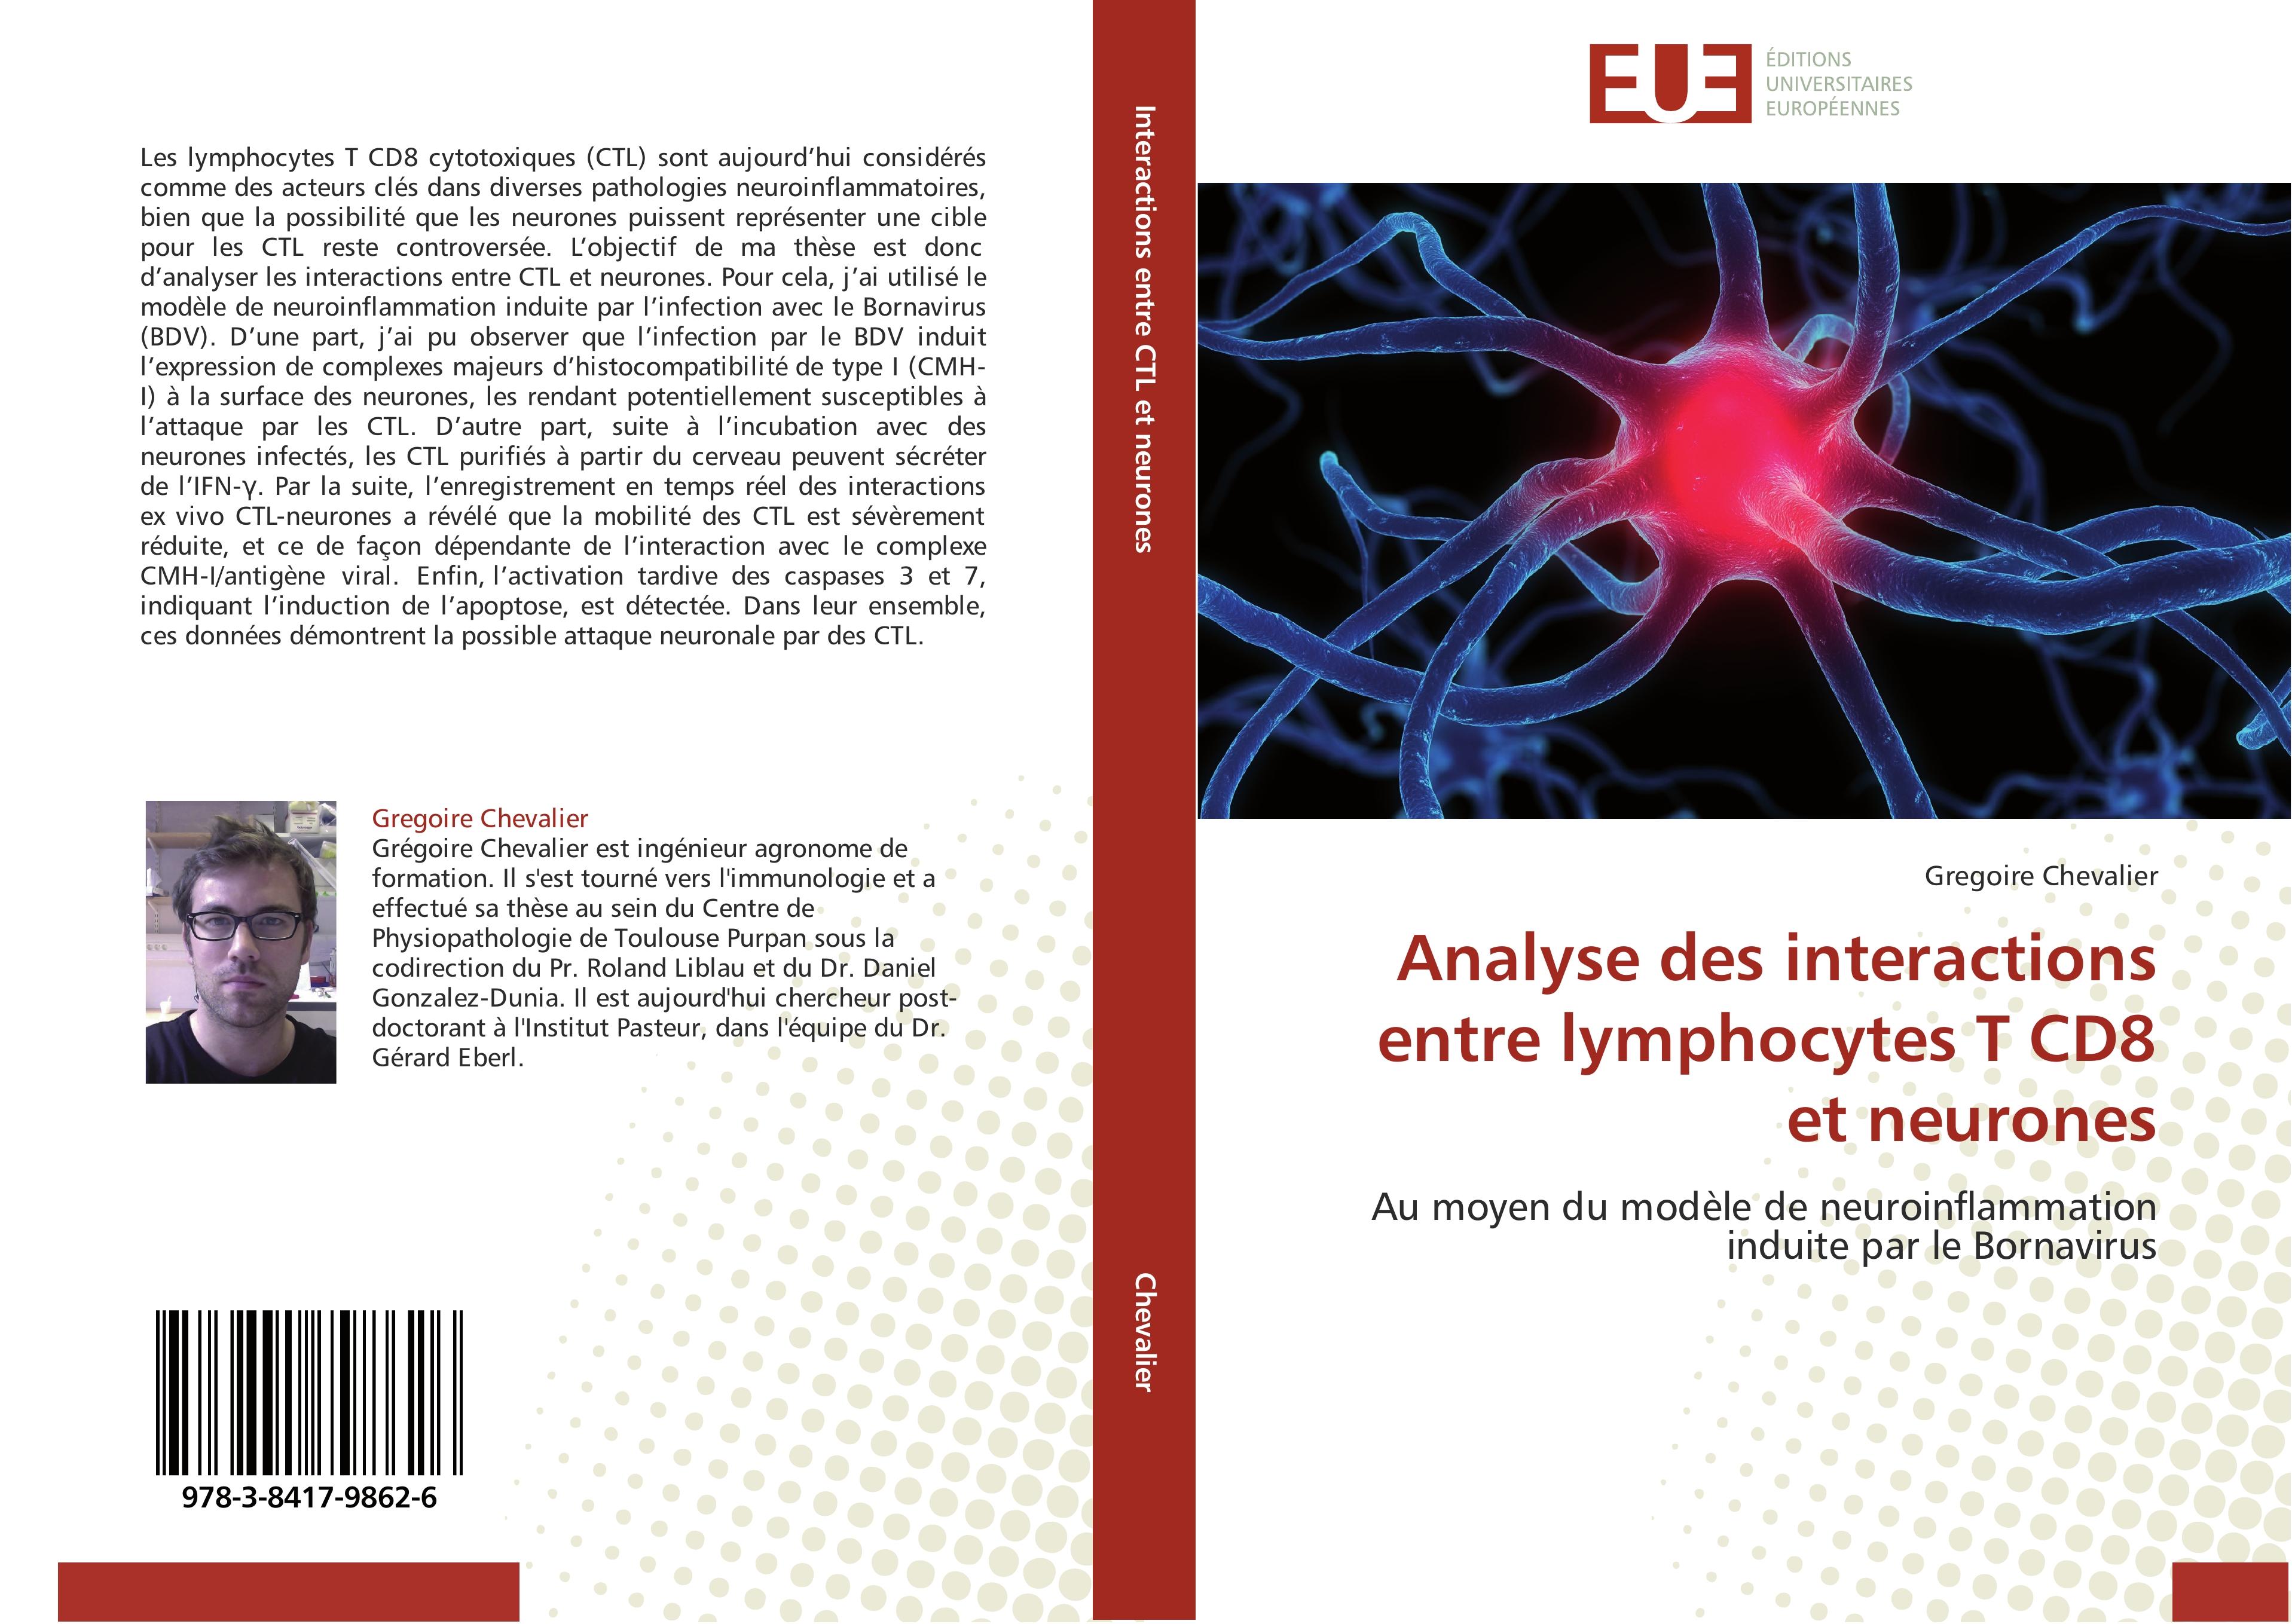 Analyse des interactions entre lymphocytes T CD8 et neurones - Gregoire Chevalier